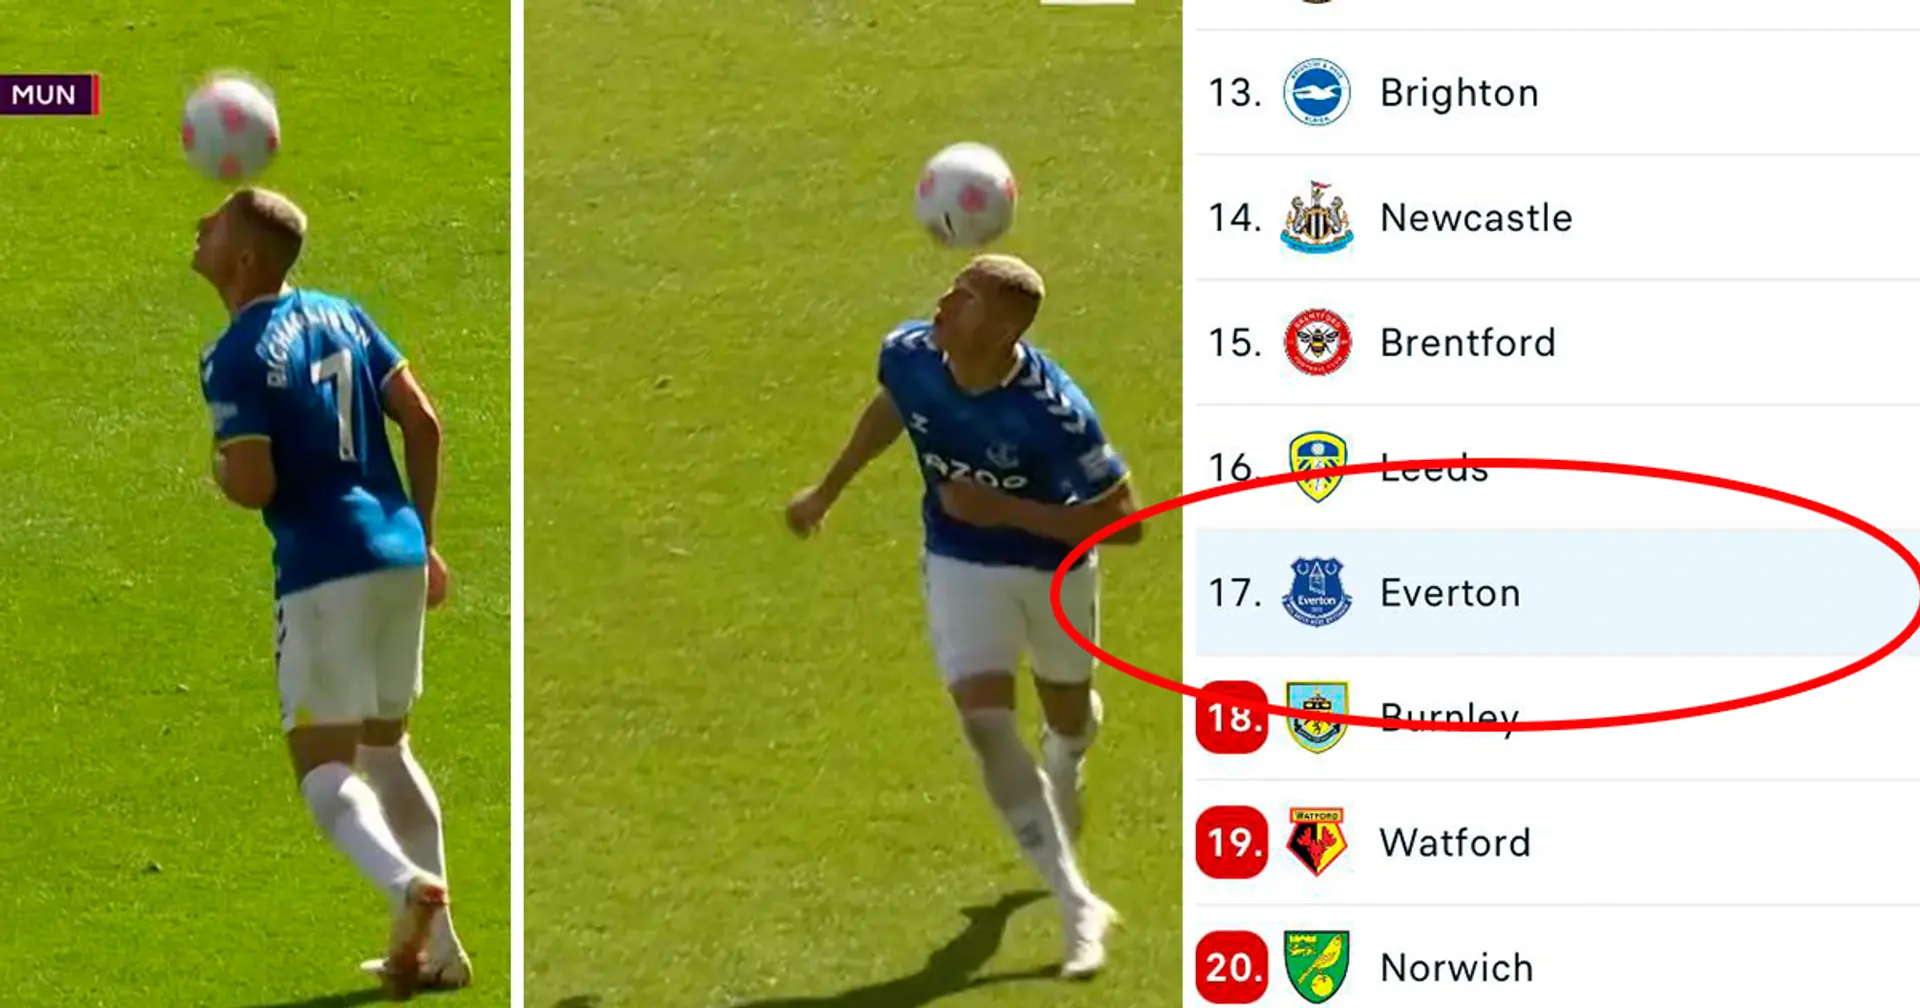 Evertons Richarlison jongliert mit dem Ball mit seinem Kopf gegen Manchester United, obwohl er 4 Punkte von der Abstiegszone entfernt ist